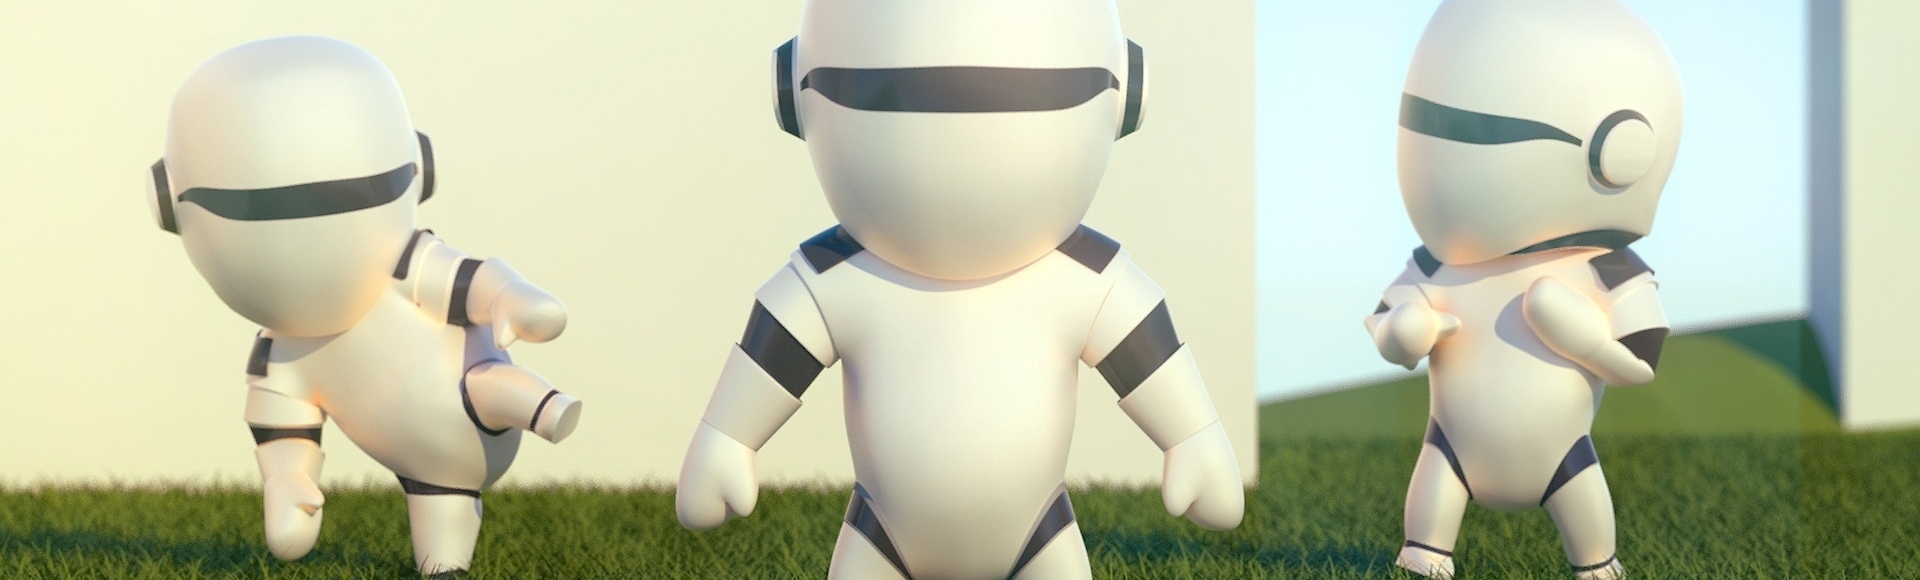 personnage 3d - petit robot chibi